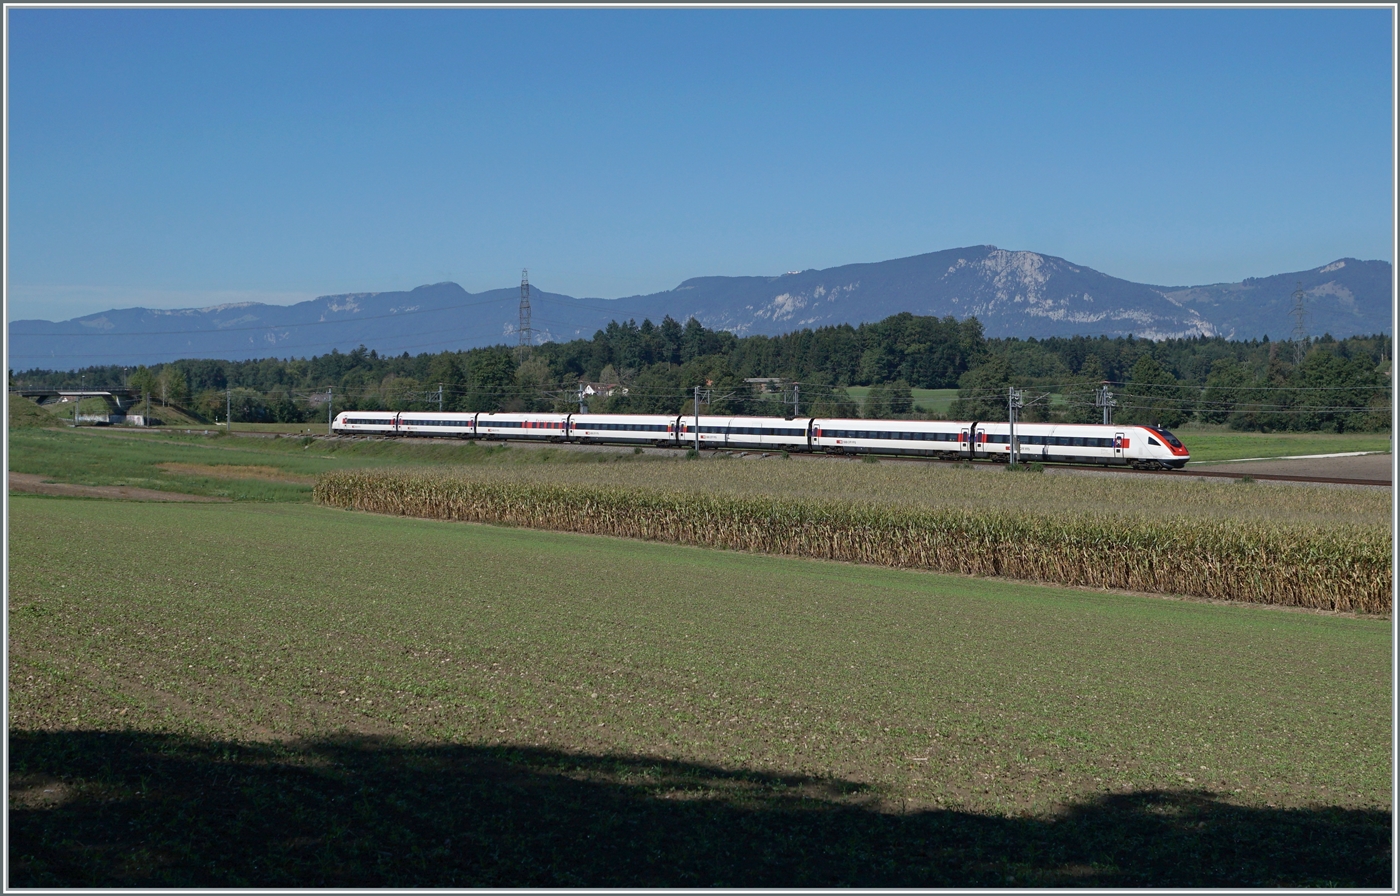 Die bis für bis zu 200 km/h zugelassene Verbindungsstrecke zwischen der NBS (bei Wanzenwil) nach Solothurn verläuft grösstenteils auf der alten Strecke Herzogenbuchsee - Solothurn (-Biel/Bienne), die 1857 als Hautstrecke eröffnet wurde, aber durch den Bau der Strecke Olten - Oensingen - Solothurn - (Busswil) zur unrentablen Nebenbahn mutierte.
Im Bild ein SBB ICN auf der Fahrt von Genève - Aéroport nach Rorschach kurz vor Wanzenwil, im Hintergrund der Jura. 

19. Sept. 2022